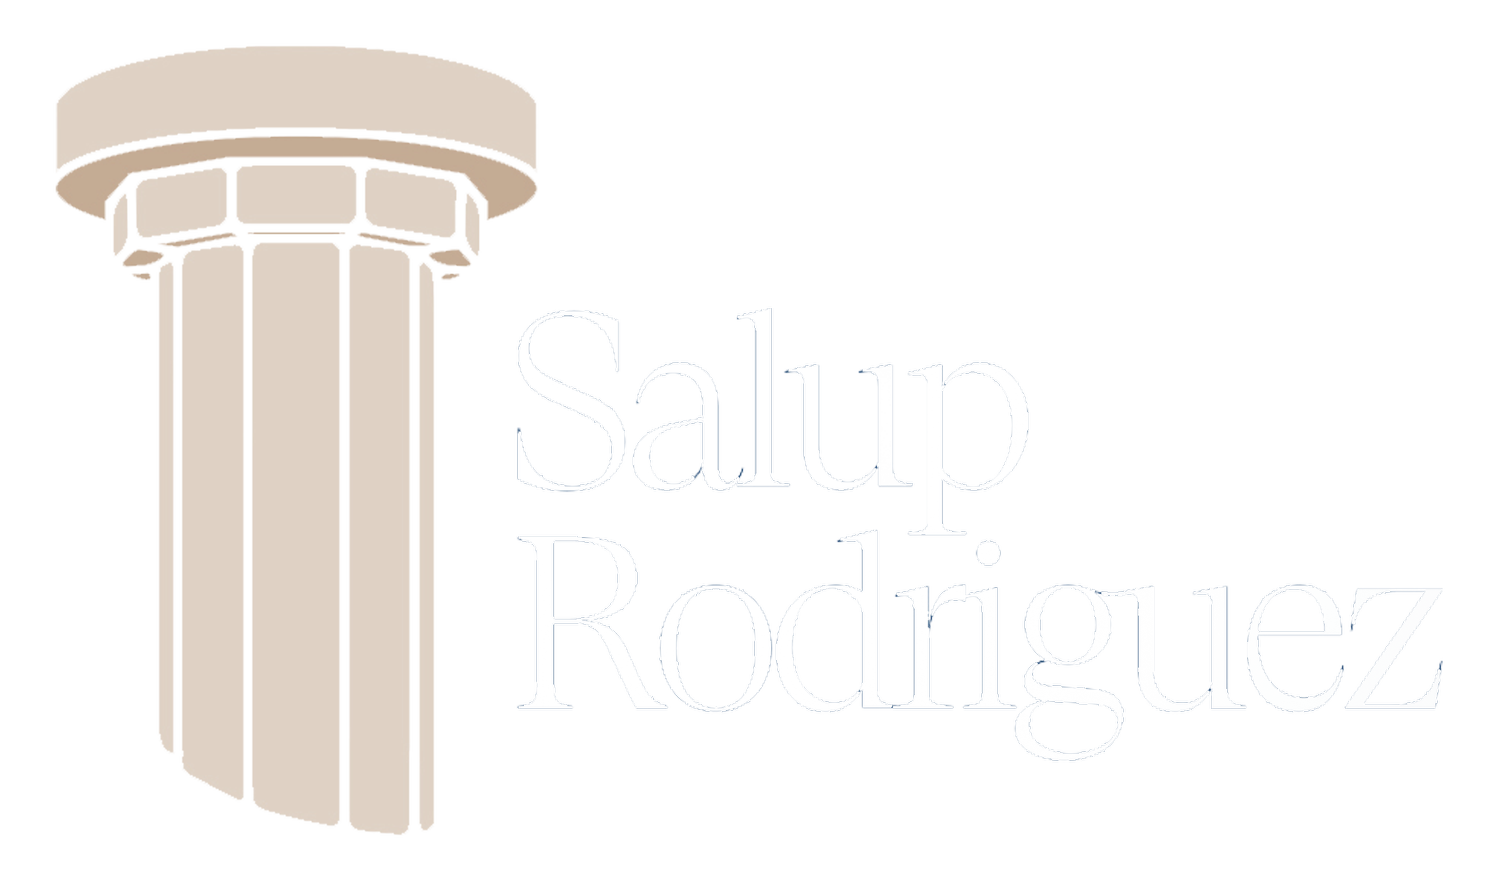 Salup Rodriguez